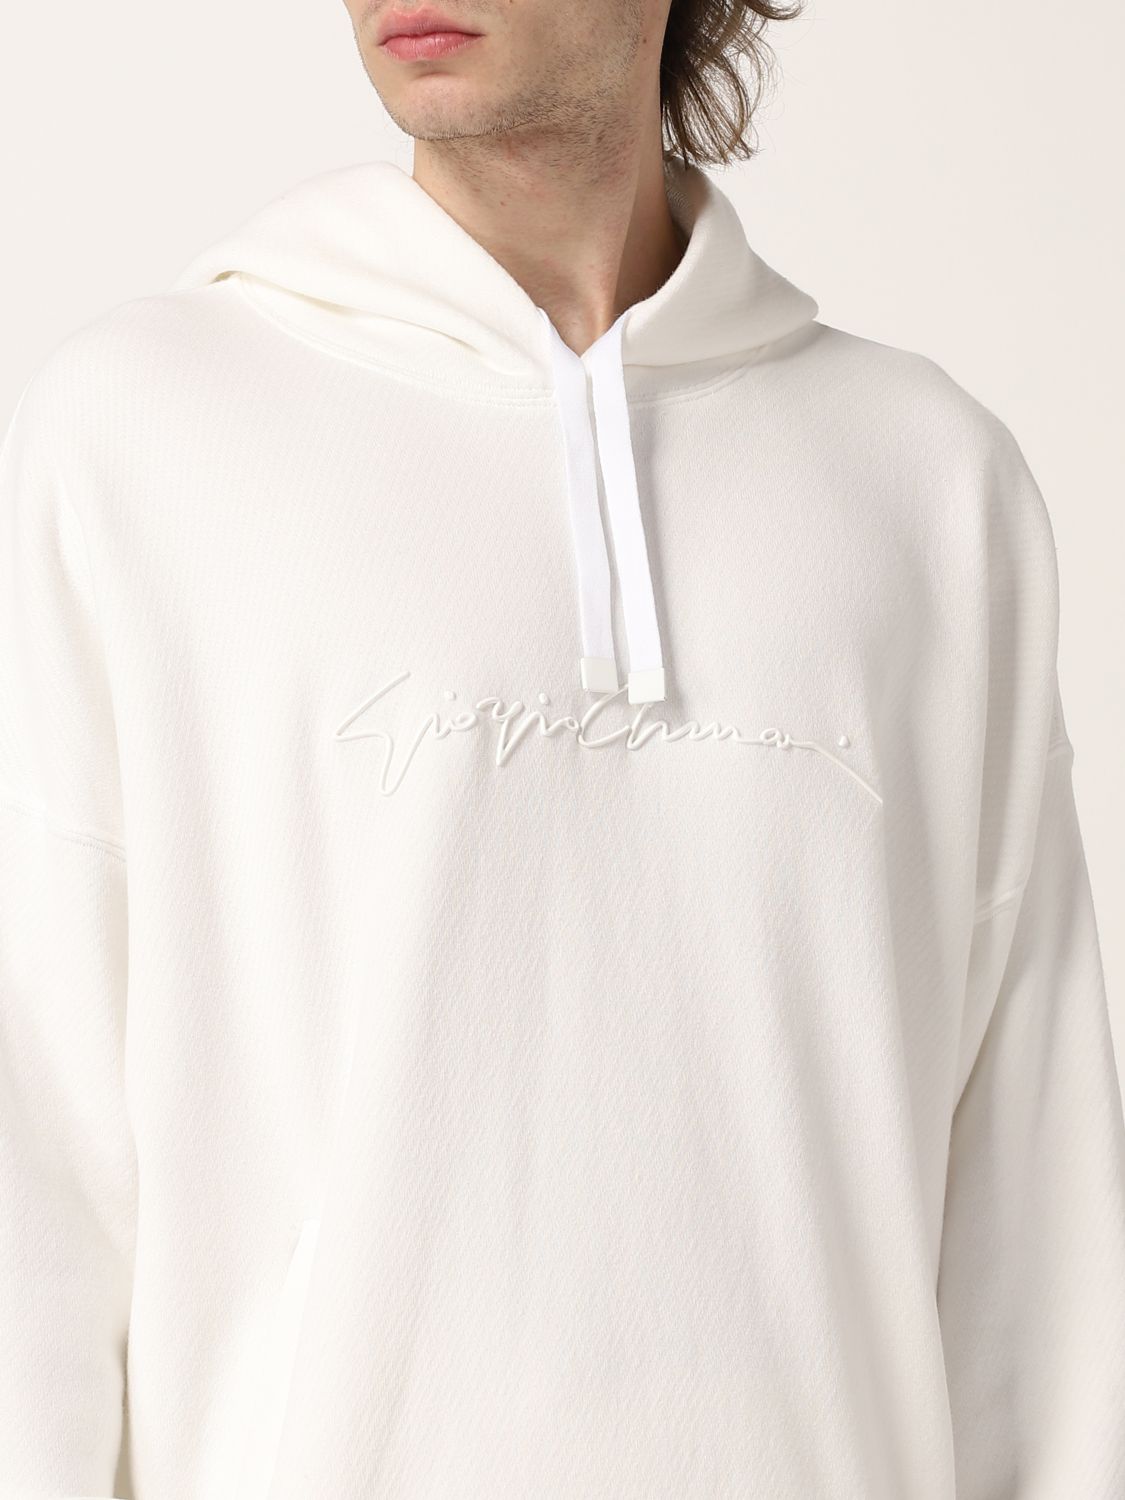 Sweatshirt Giorgio Armani: Giorgio Armani Herren sweatshirt weiß 5